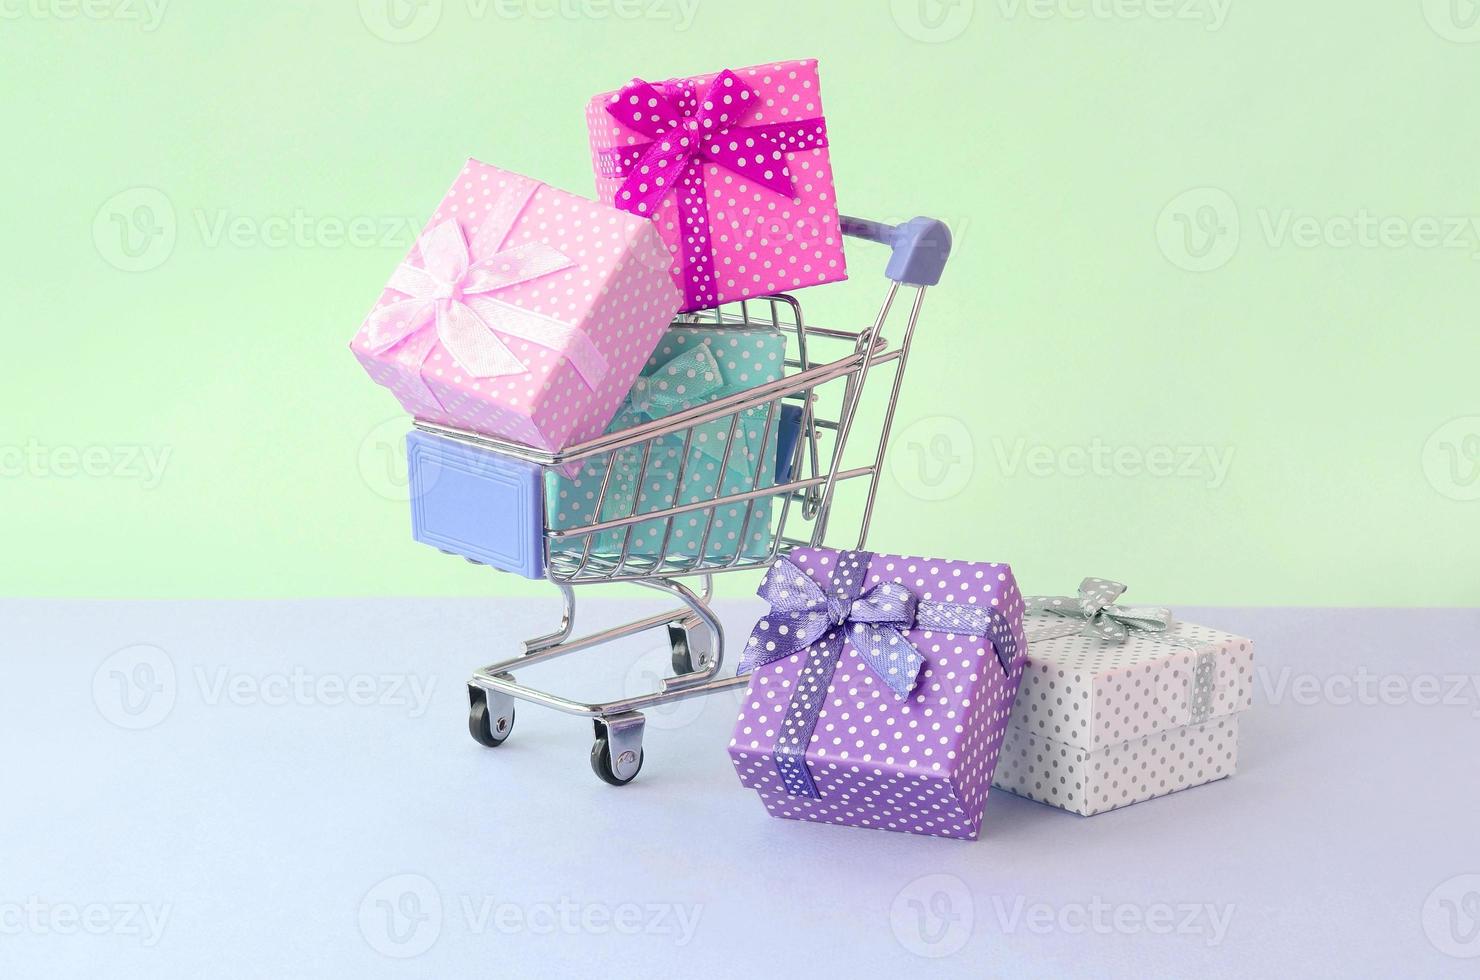 pequenas caixas de presente de cores diferentes com fitas no carrinho de compras em um fundo pastel violeta e azul foto